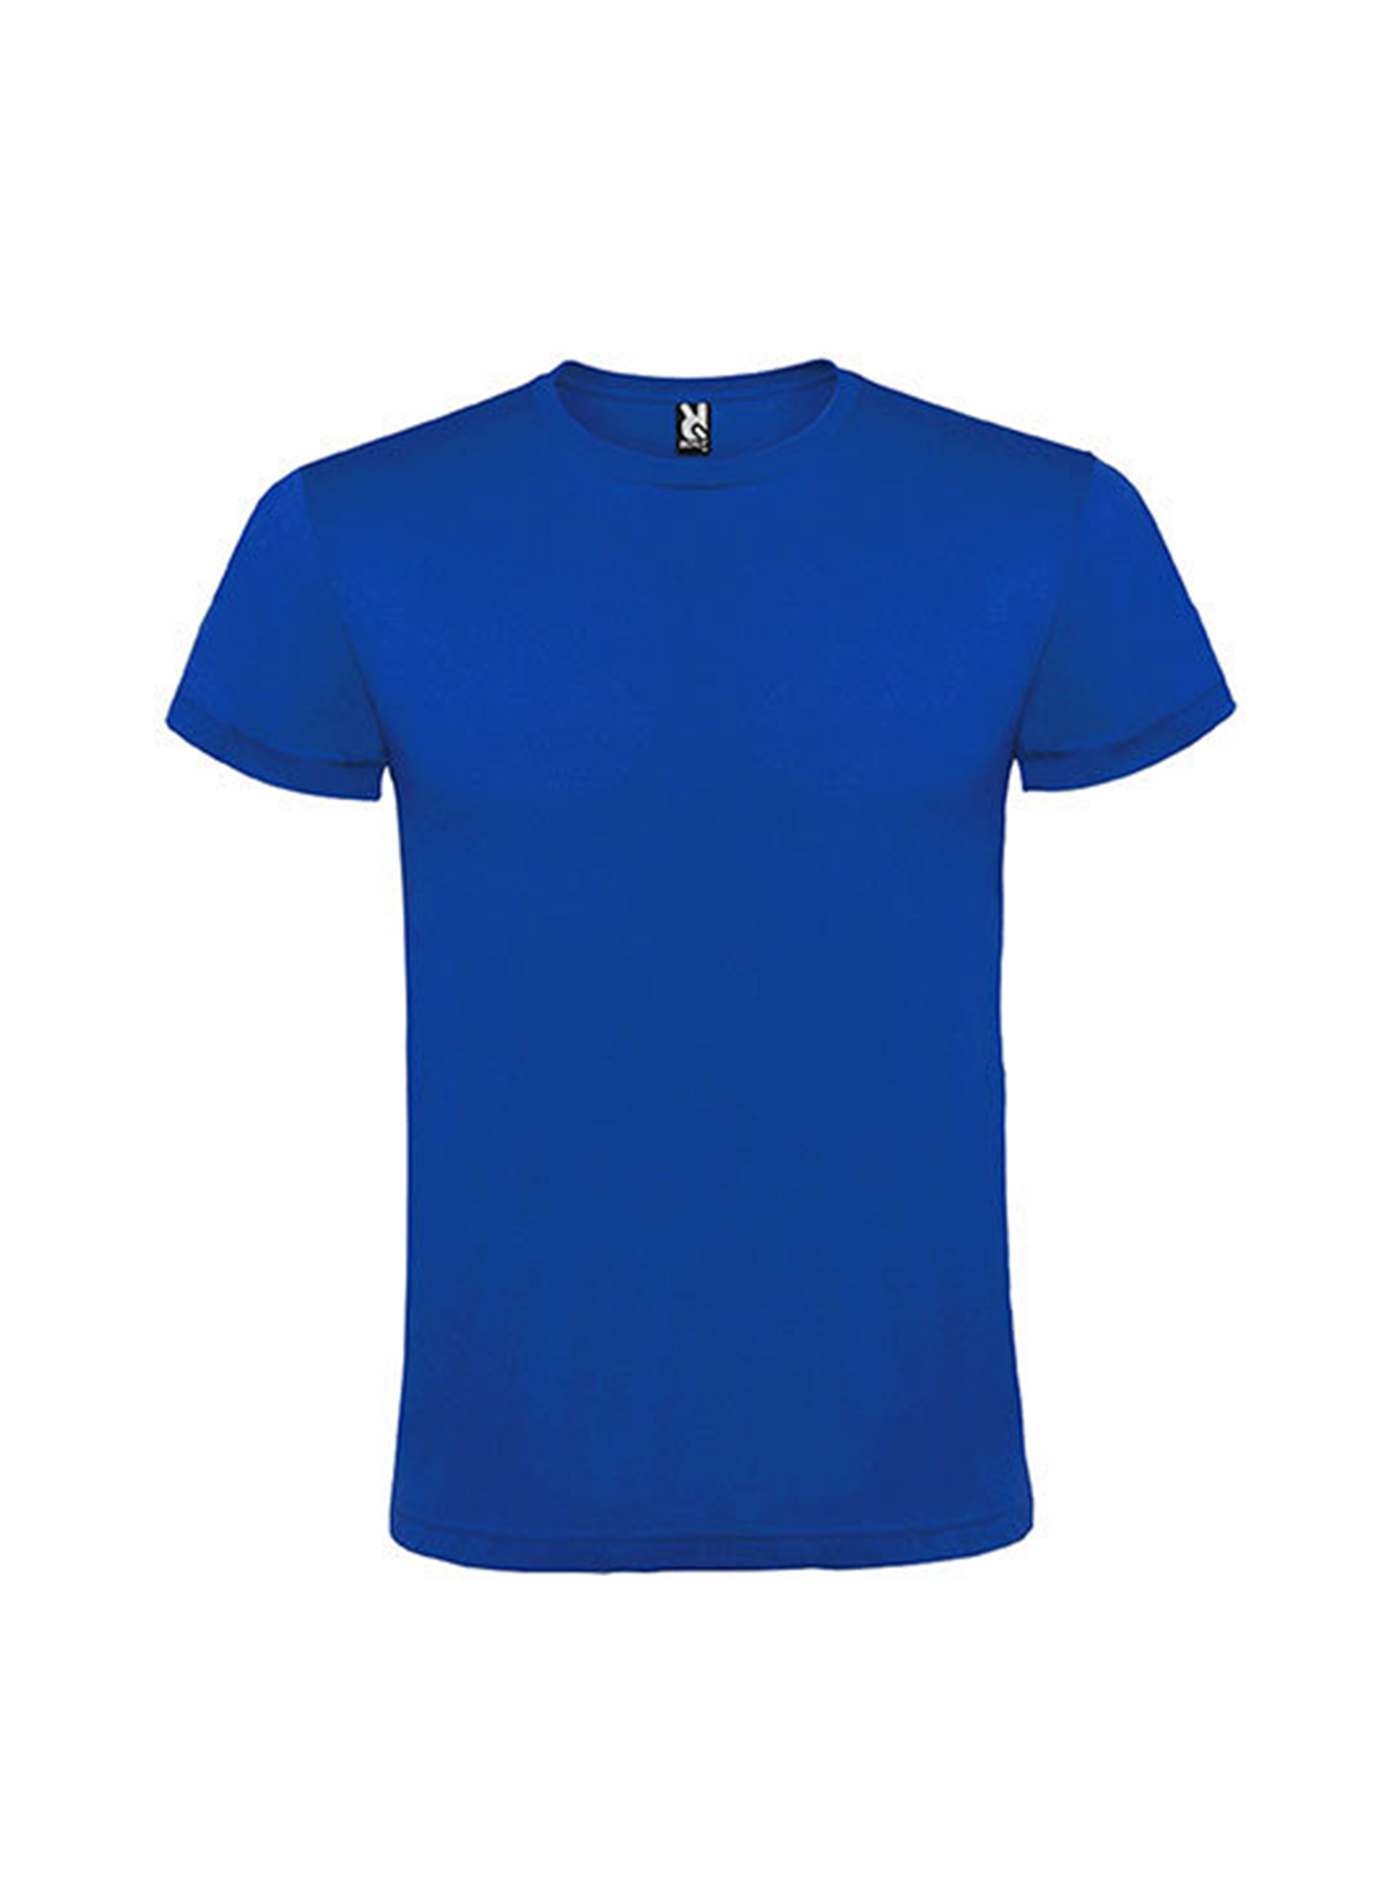 Pánské tričko Roly Atomic - Královská modrá M